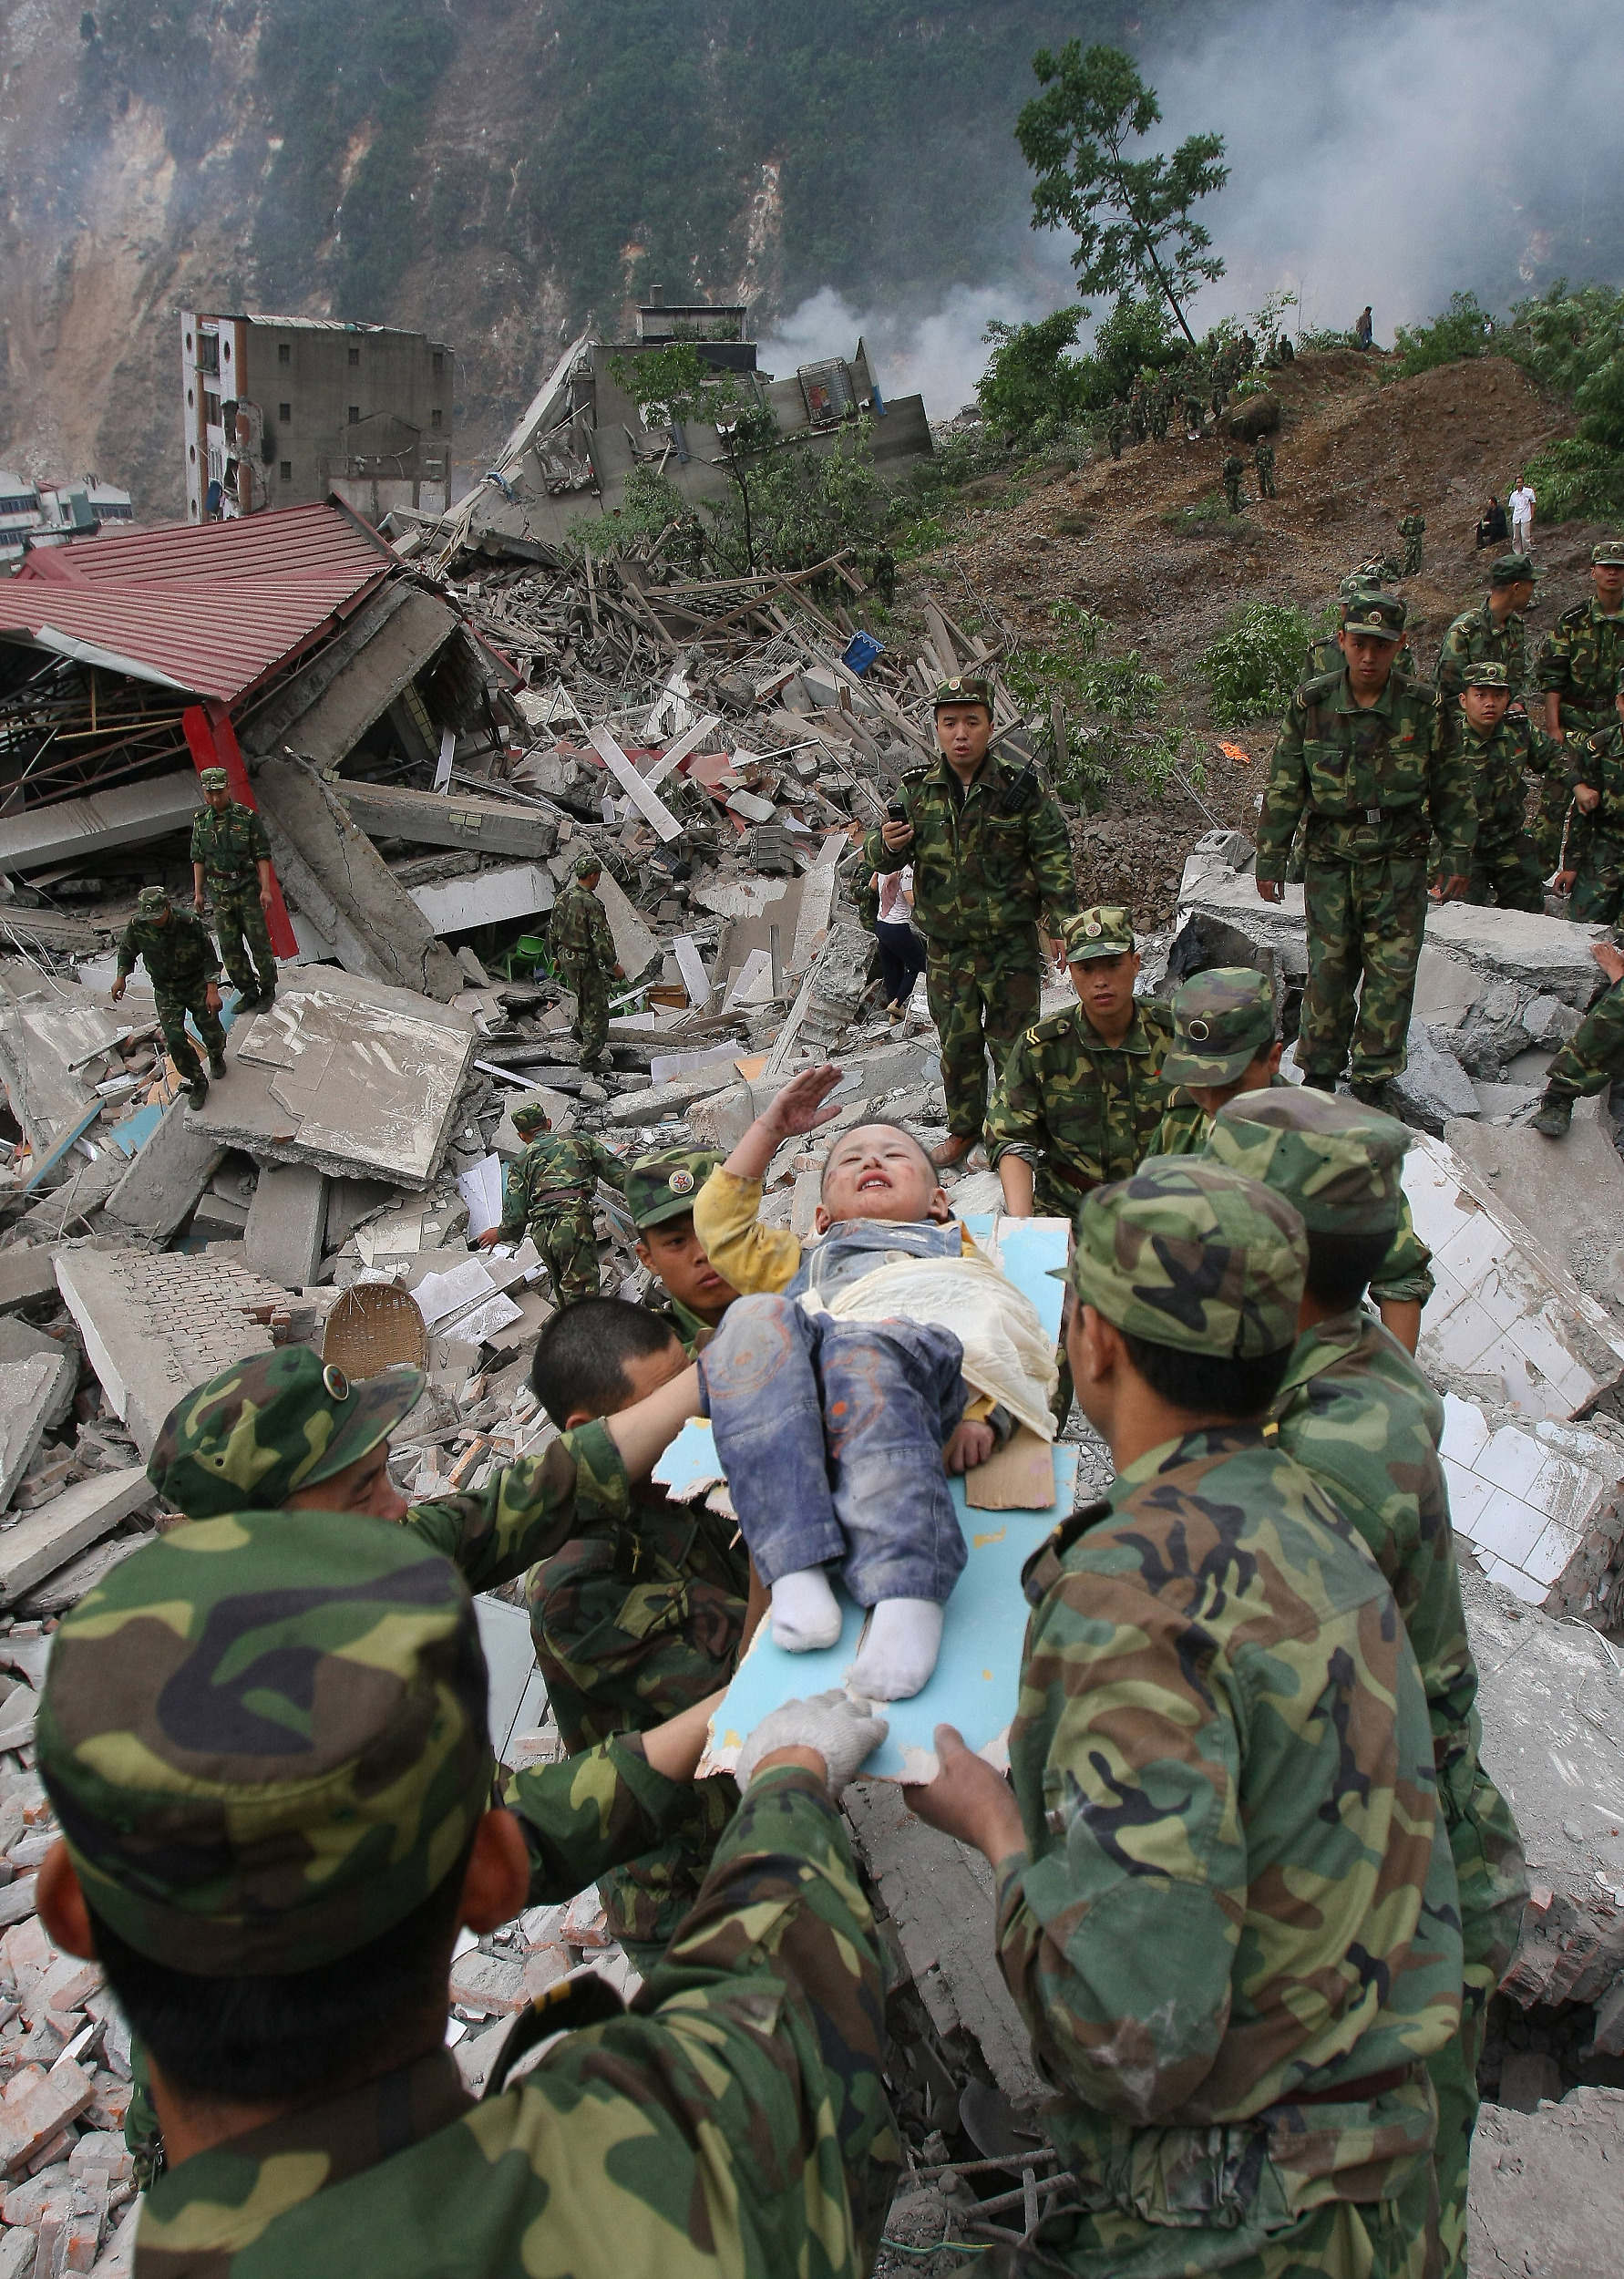 Lang Zheng salue les soldats de l’Armée populaire de libération (APL) après avoir été extrait des décombres lors du tremblement de terre à Wenchuan (Sud-Ouest de la Chine) en 2008. [Photo/VCG]